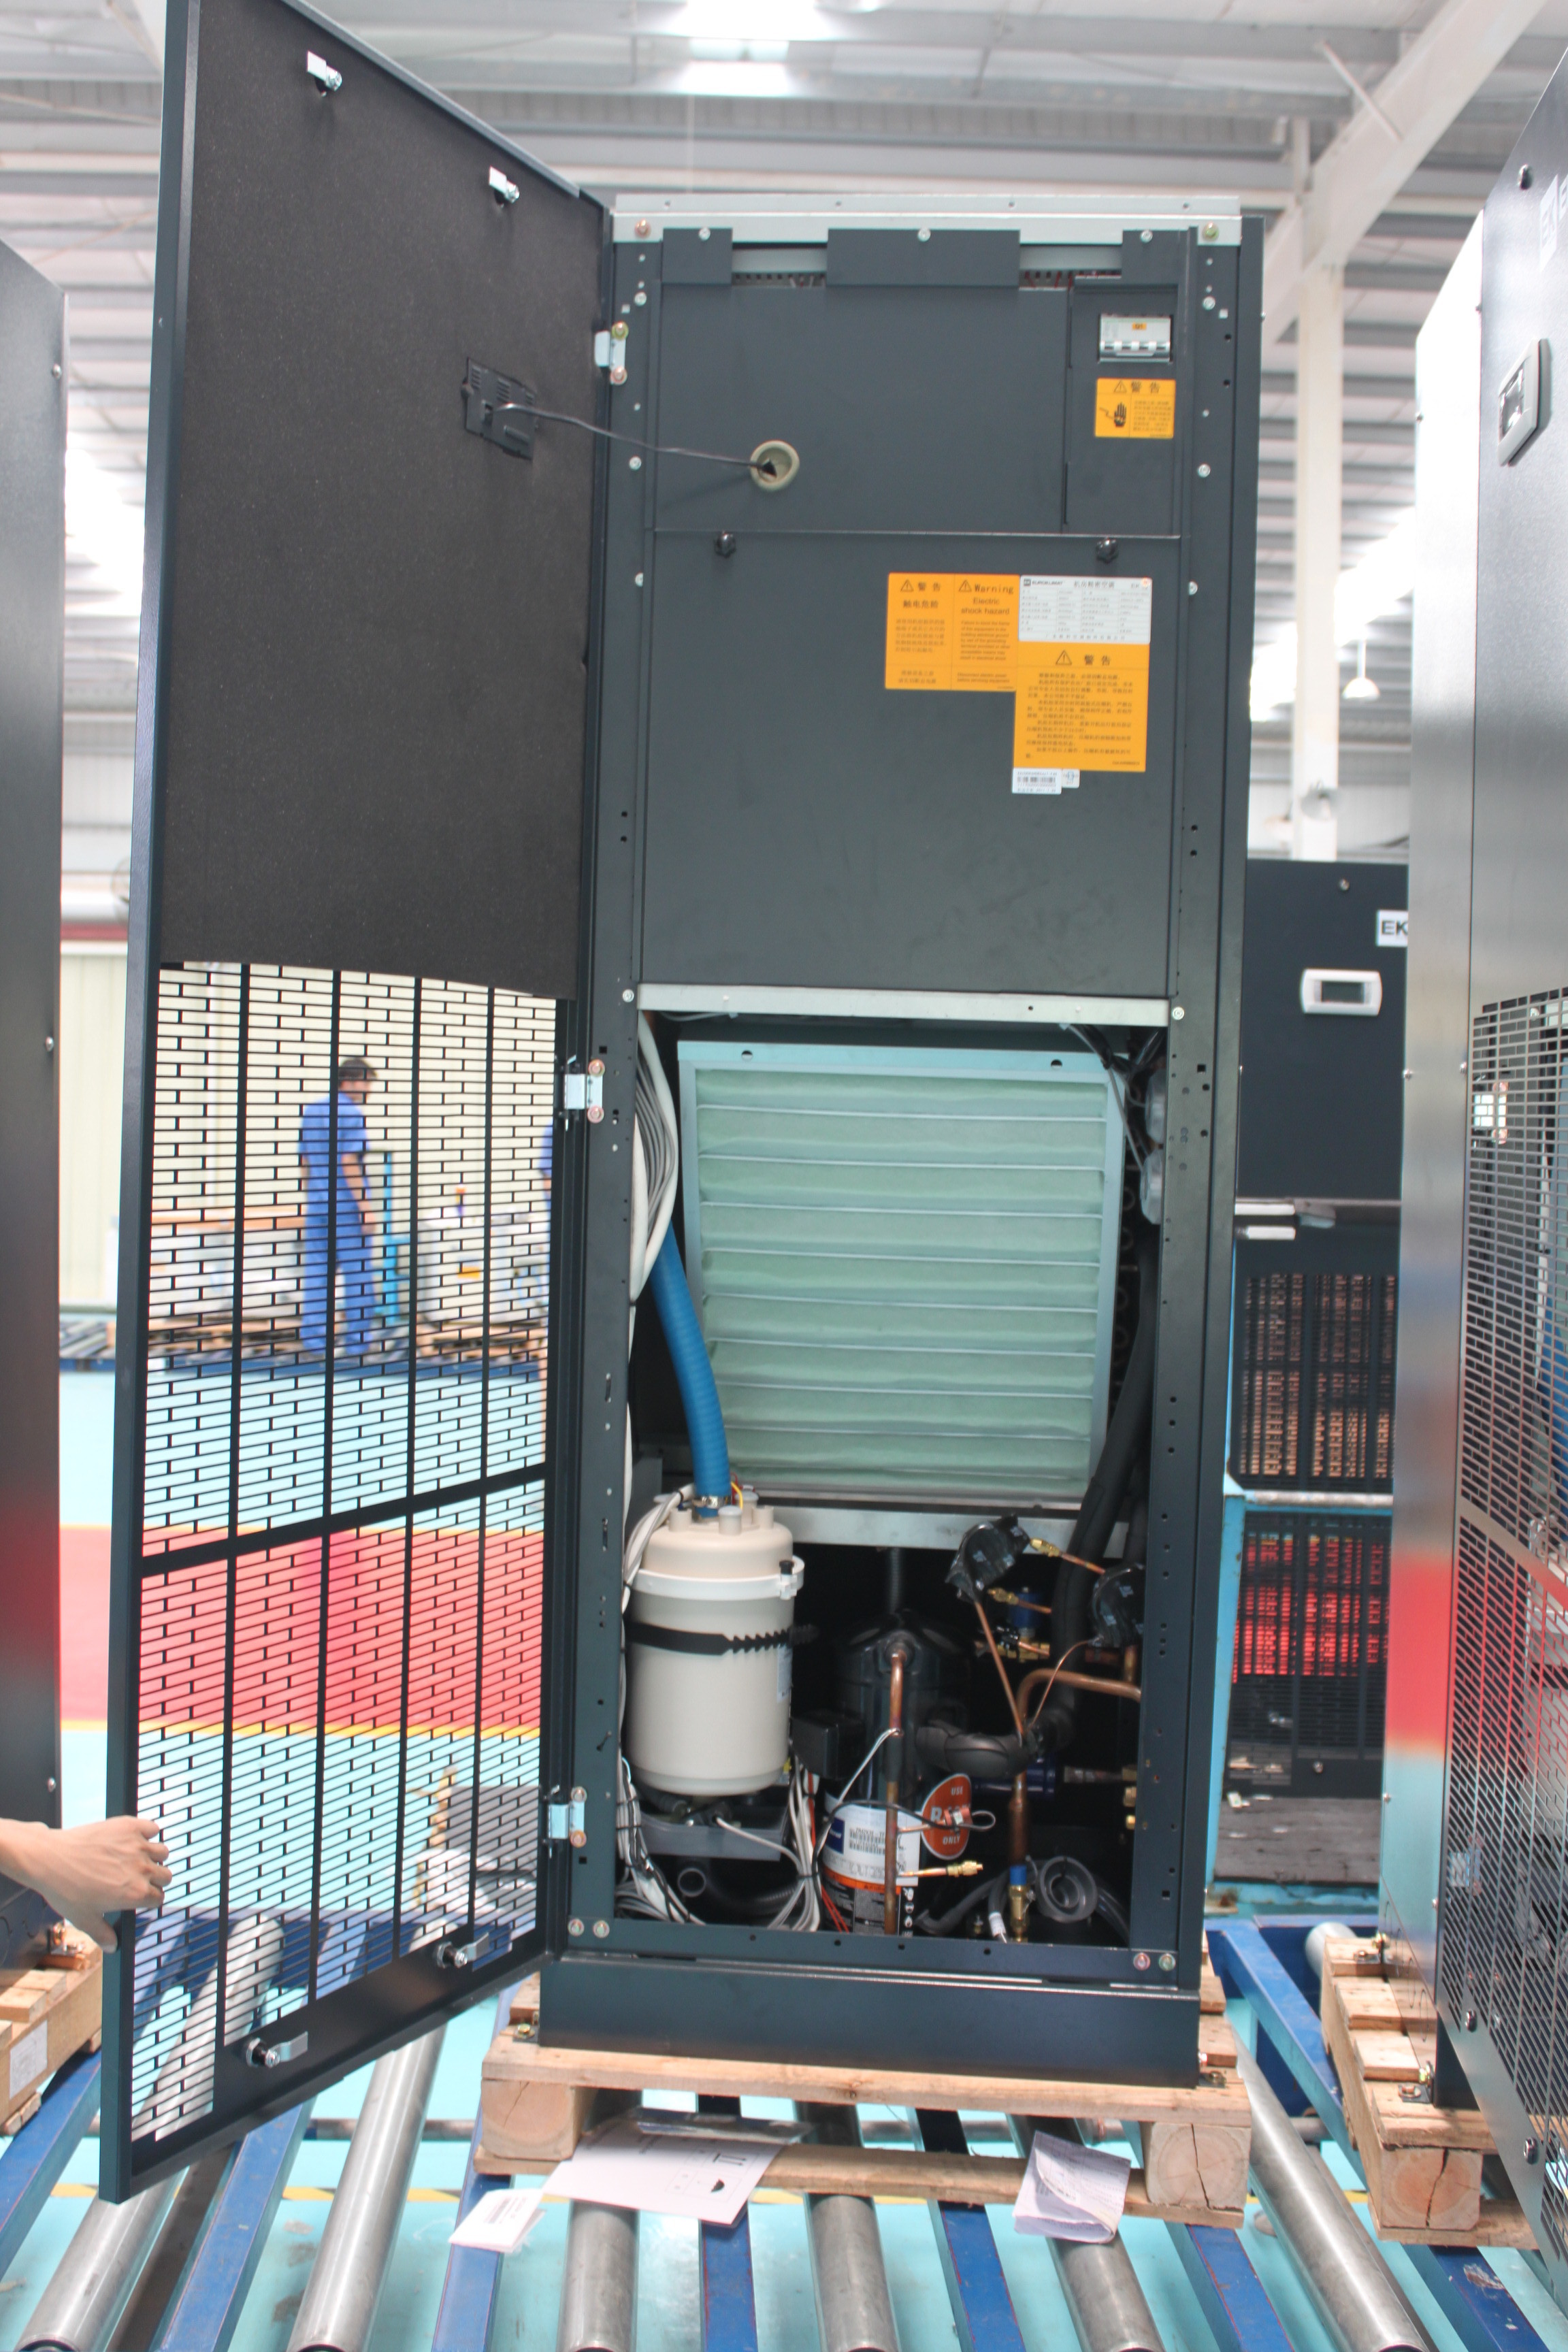 Condizionatore d'aria raffreddato ad acqua industriale di precisione 34.9KW per la stanza del server